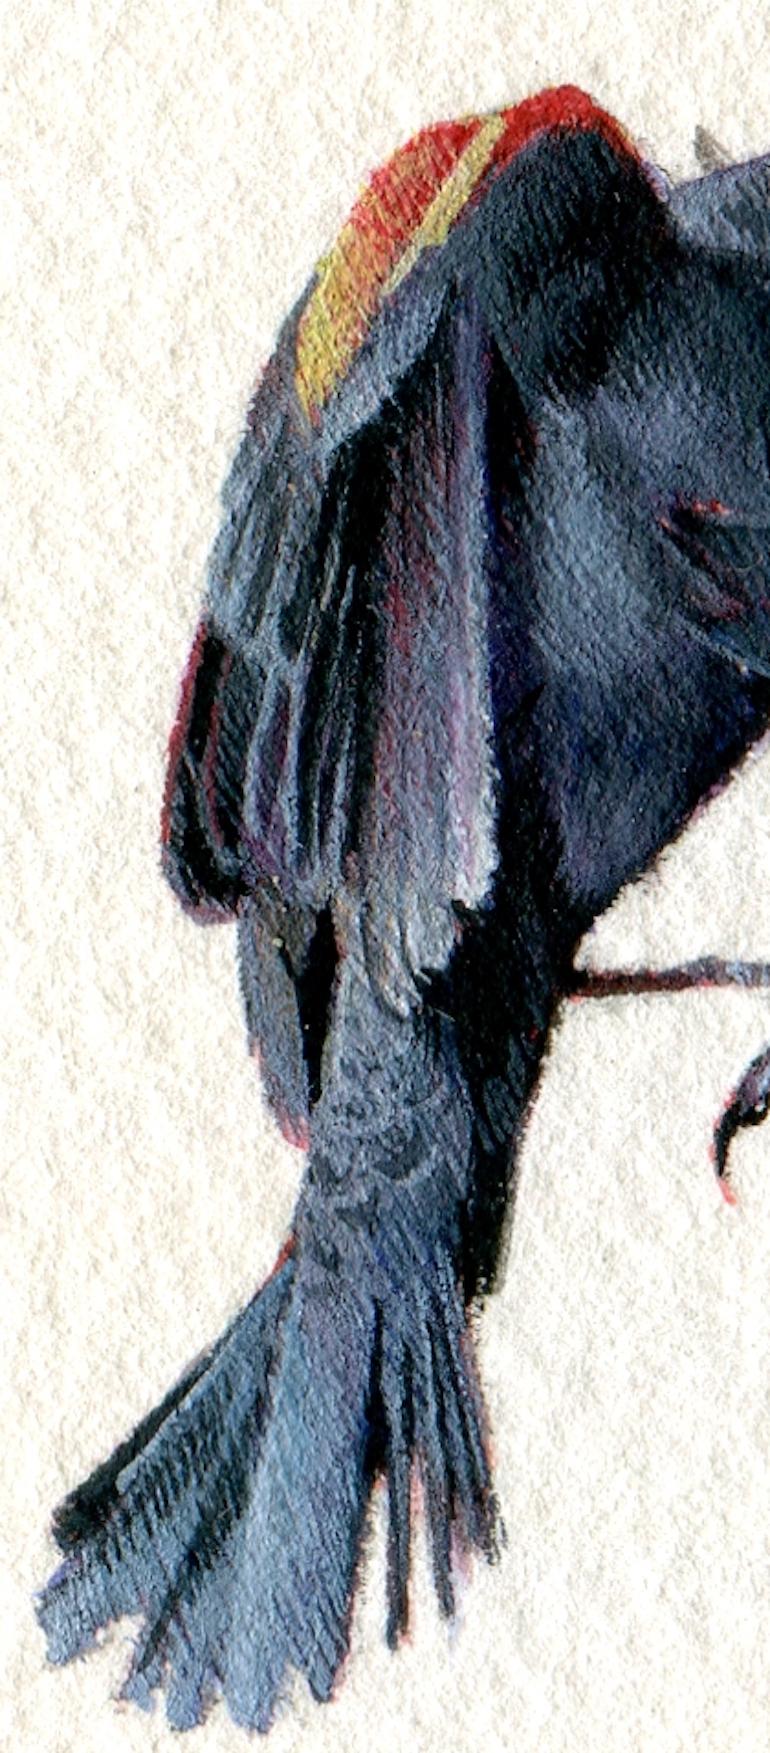 Rot geflügelte schwarze Vögel, realistisches Miniatur-Vogelporträt in Gouache auf Papier, 2020 – Art von Dina Brodsky